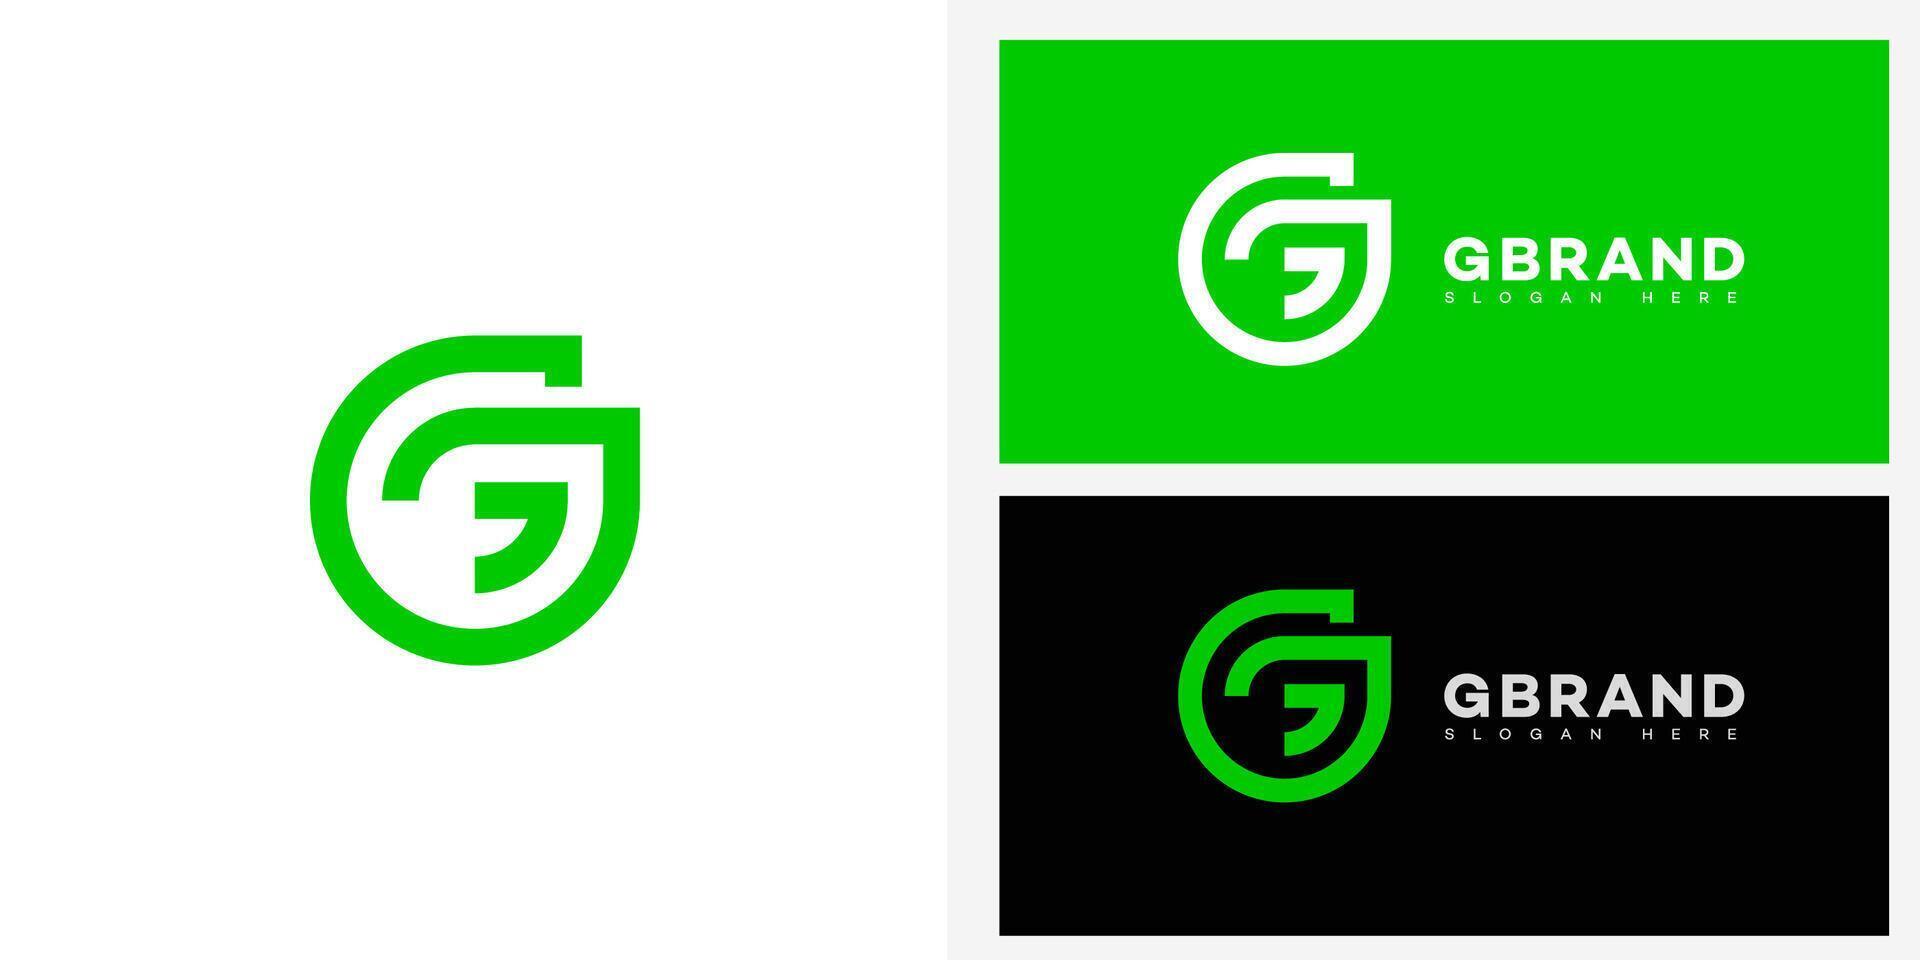 G Brief Logo Symbol Marke Identität, G Brief Zeichen Symbol Vorlage vektor